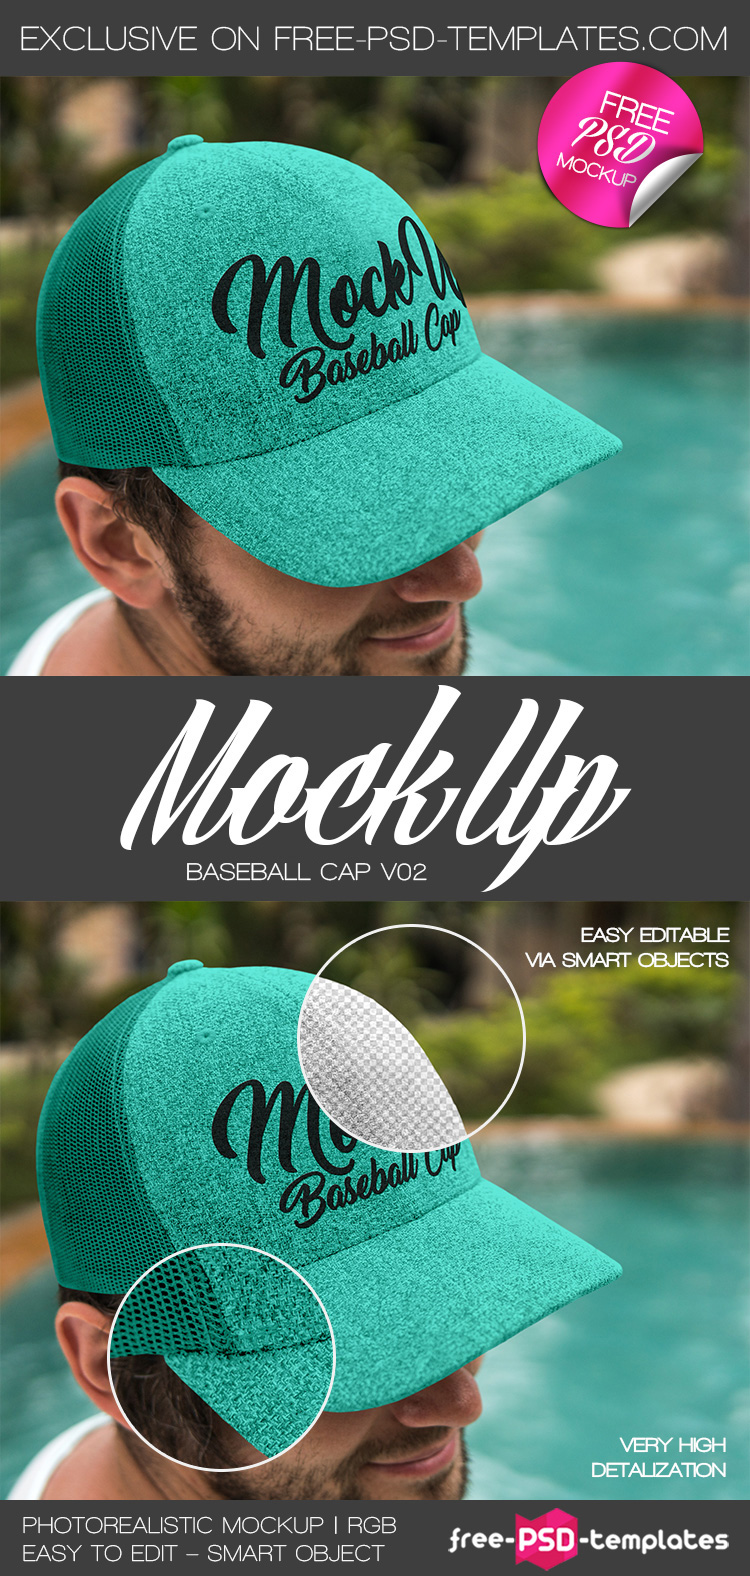 210+ Baseball Cap Mockup Template Zip File